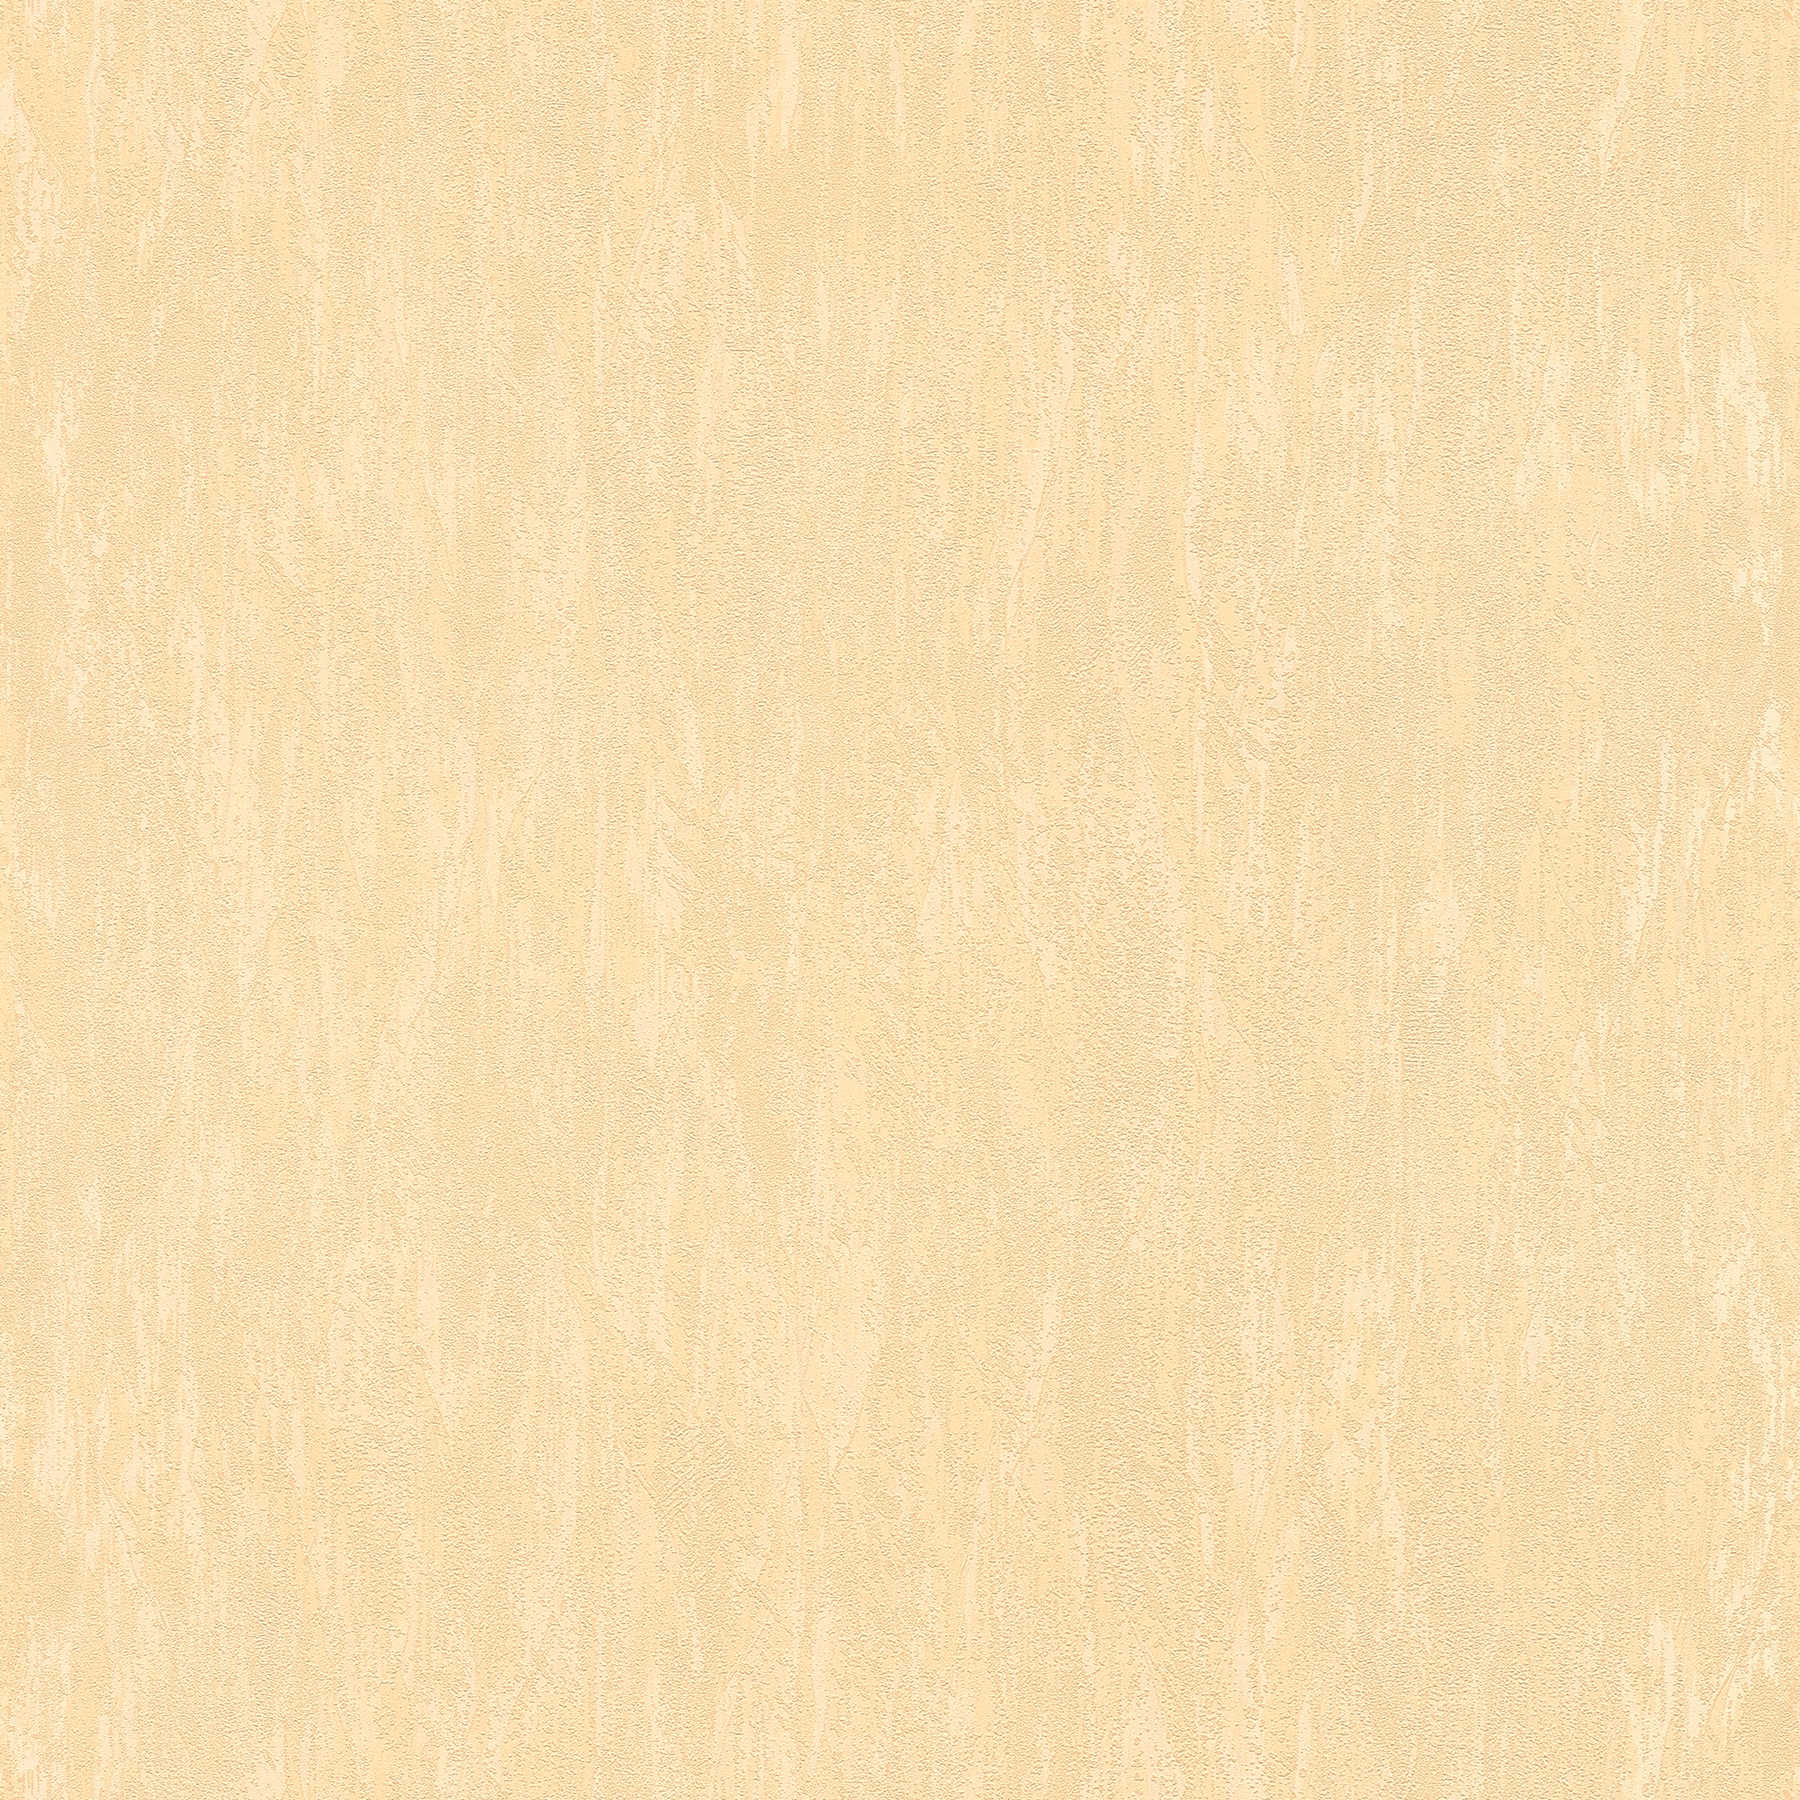 Gipspapier behang licht geel met structuur effect
